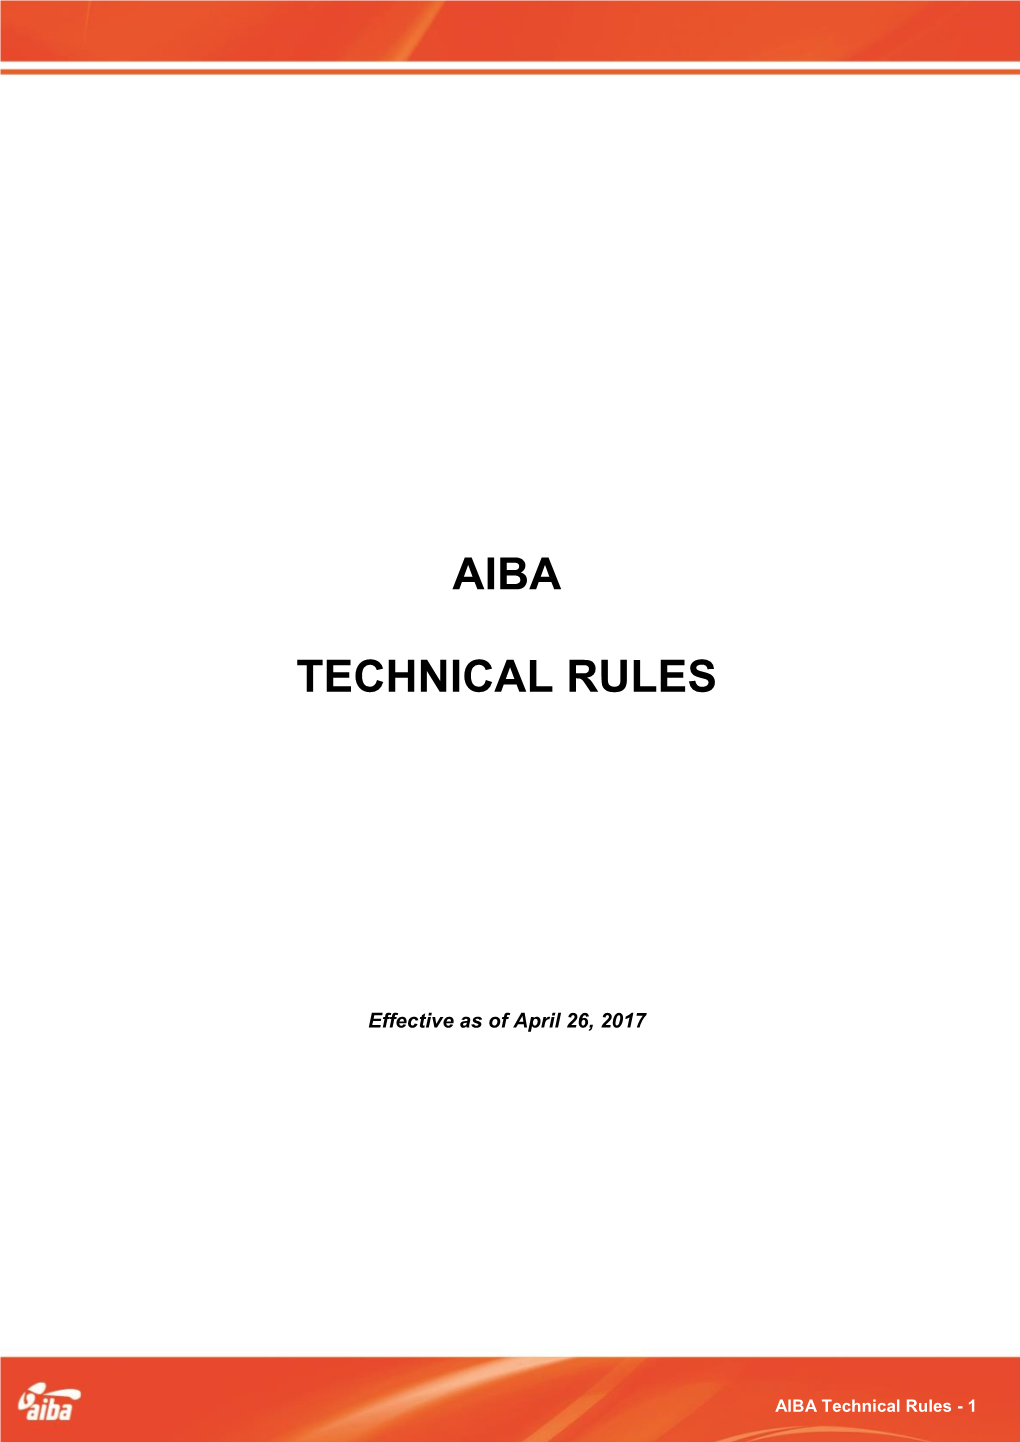 AIBA Technical Rules - 1